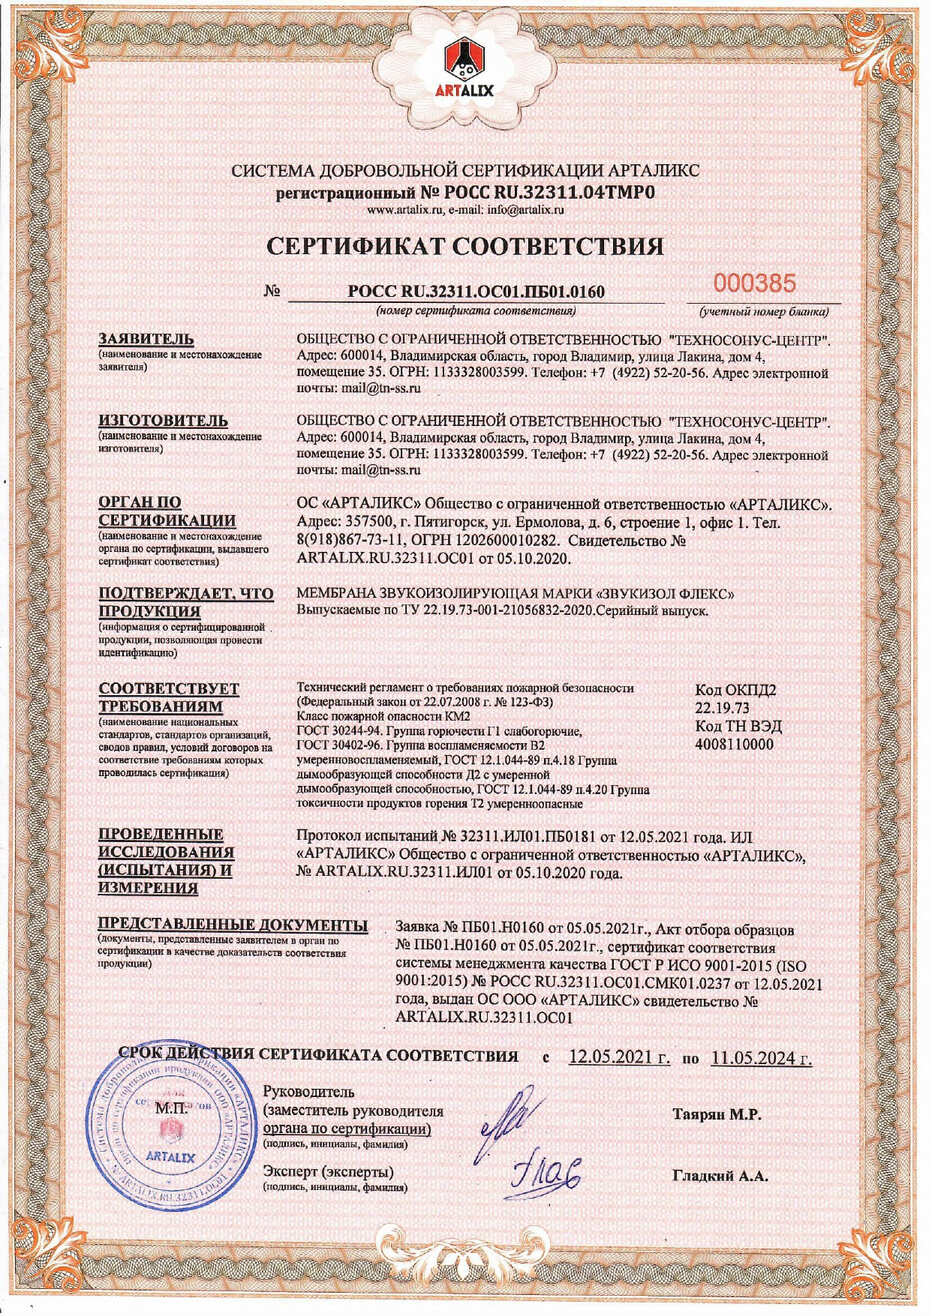 Сертификат пожарной безопасности до 11.05.2024